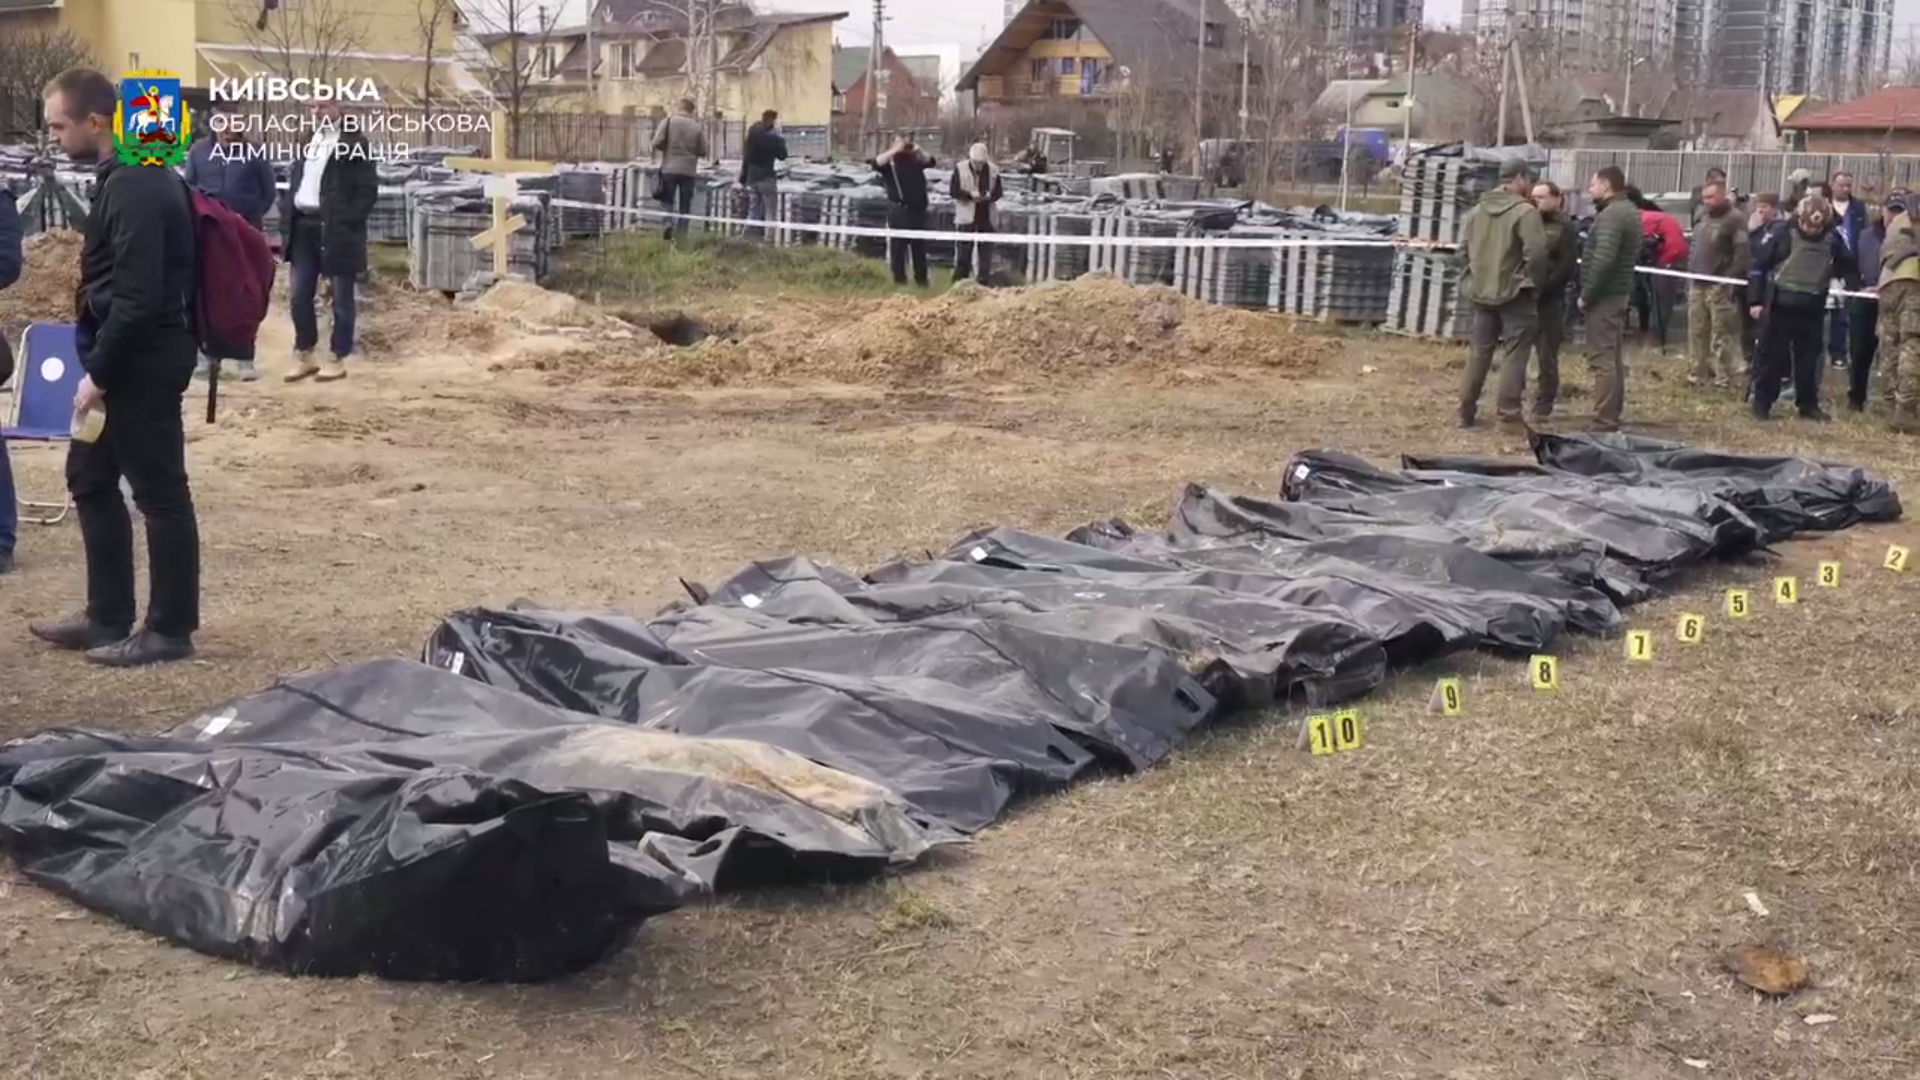 Эксгумация массовых захоронений в г. Буча Киевской области. Скриншот из видео из телеграм-канала Киевской областной военной администрации.